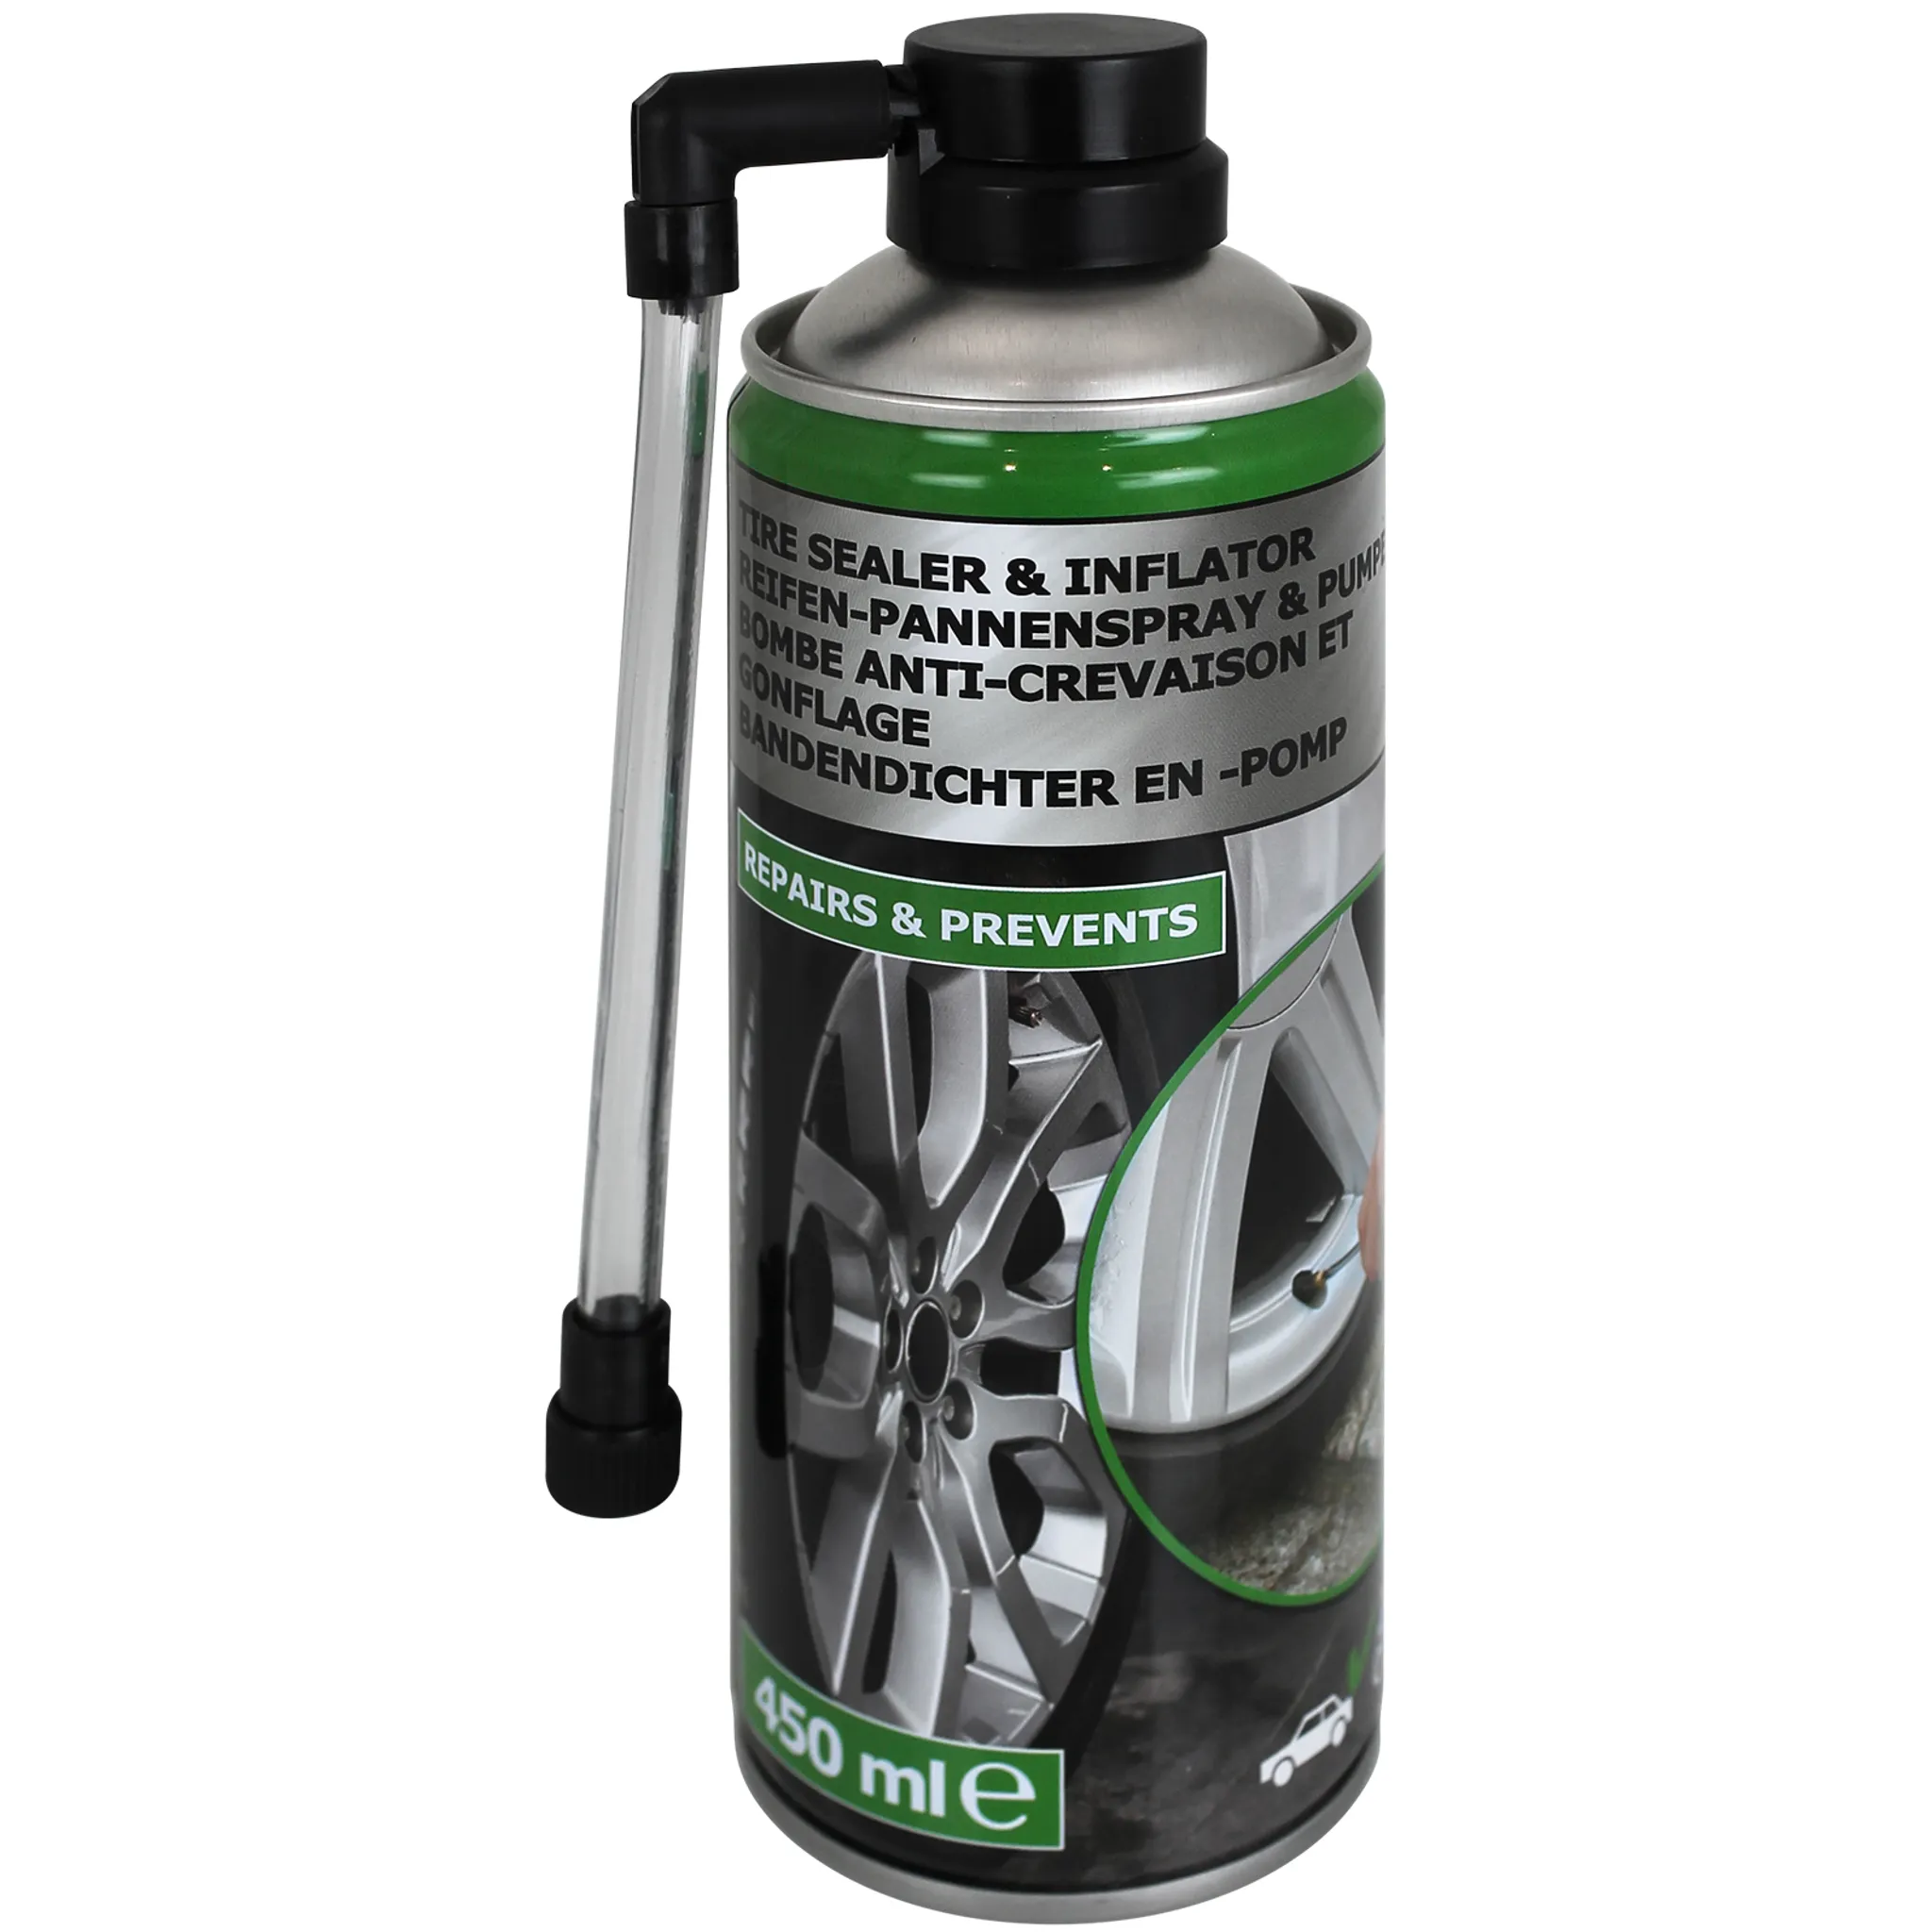 PETEC Reifendichtmittel Reifenpannenspray, für Auto, Pannenhilfe, 400ml –  Böttcher AG